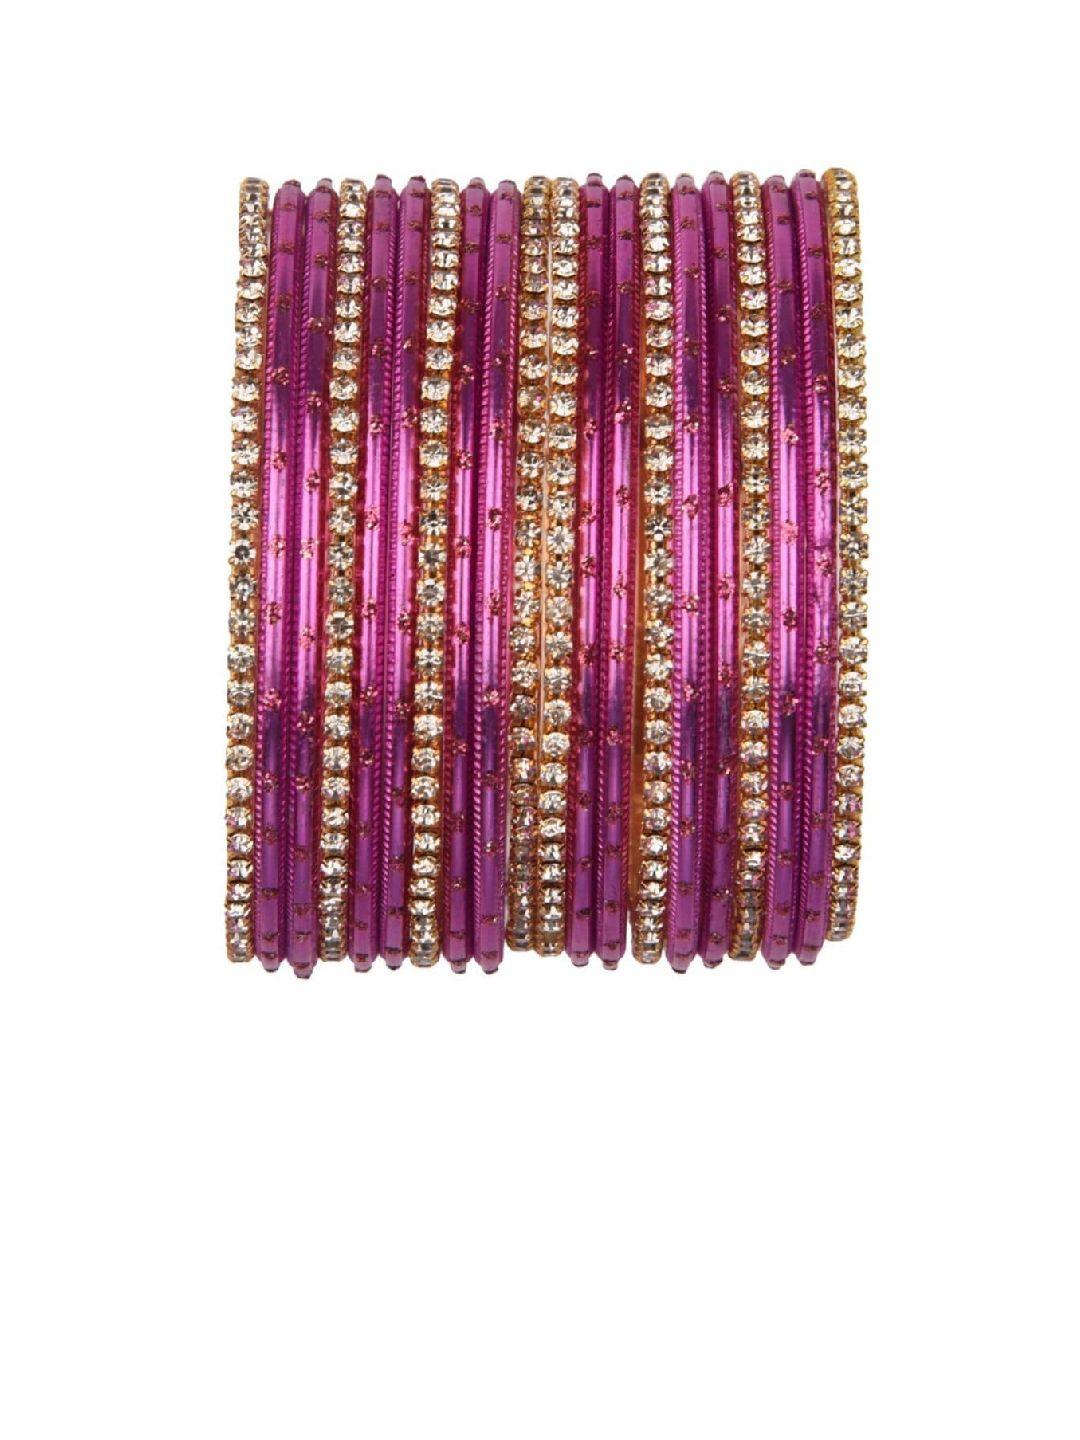 efulgenz set of 20 pink & white crystal studded bangle